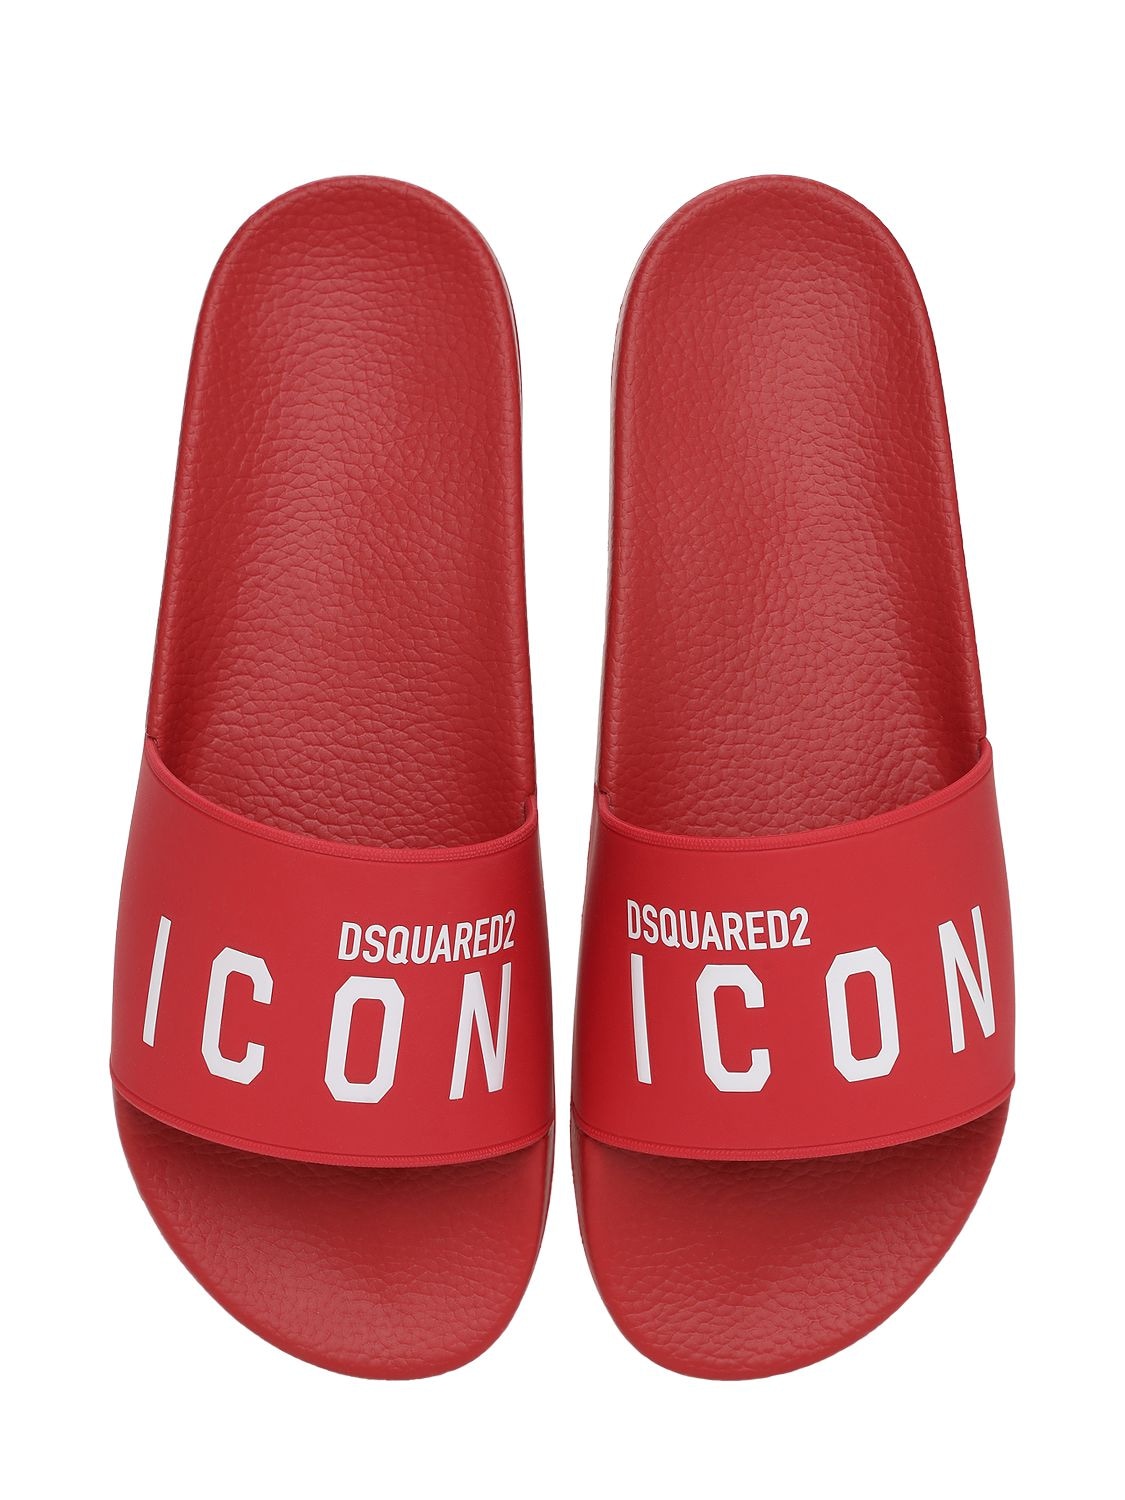 Dsquared2 - Icon print rubber slide sandals - Red/White | Luisaviaroma